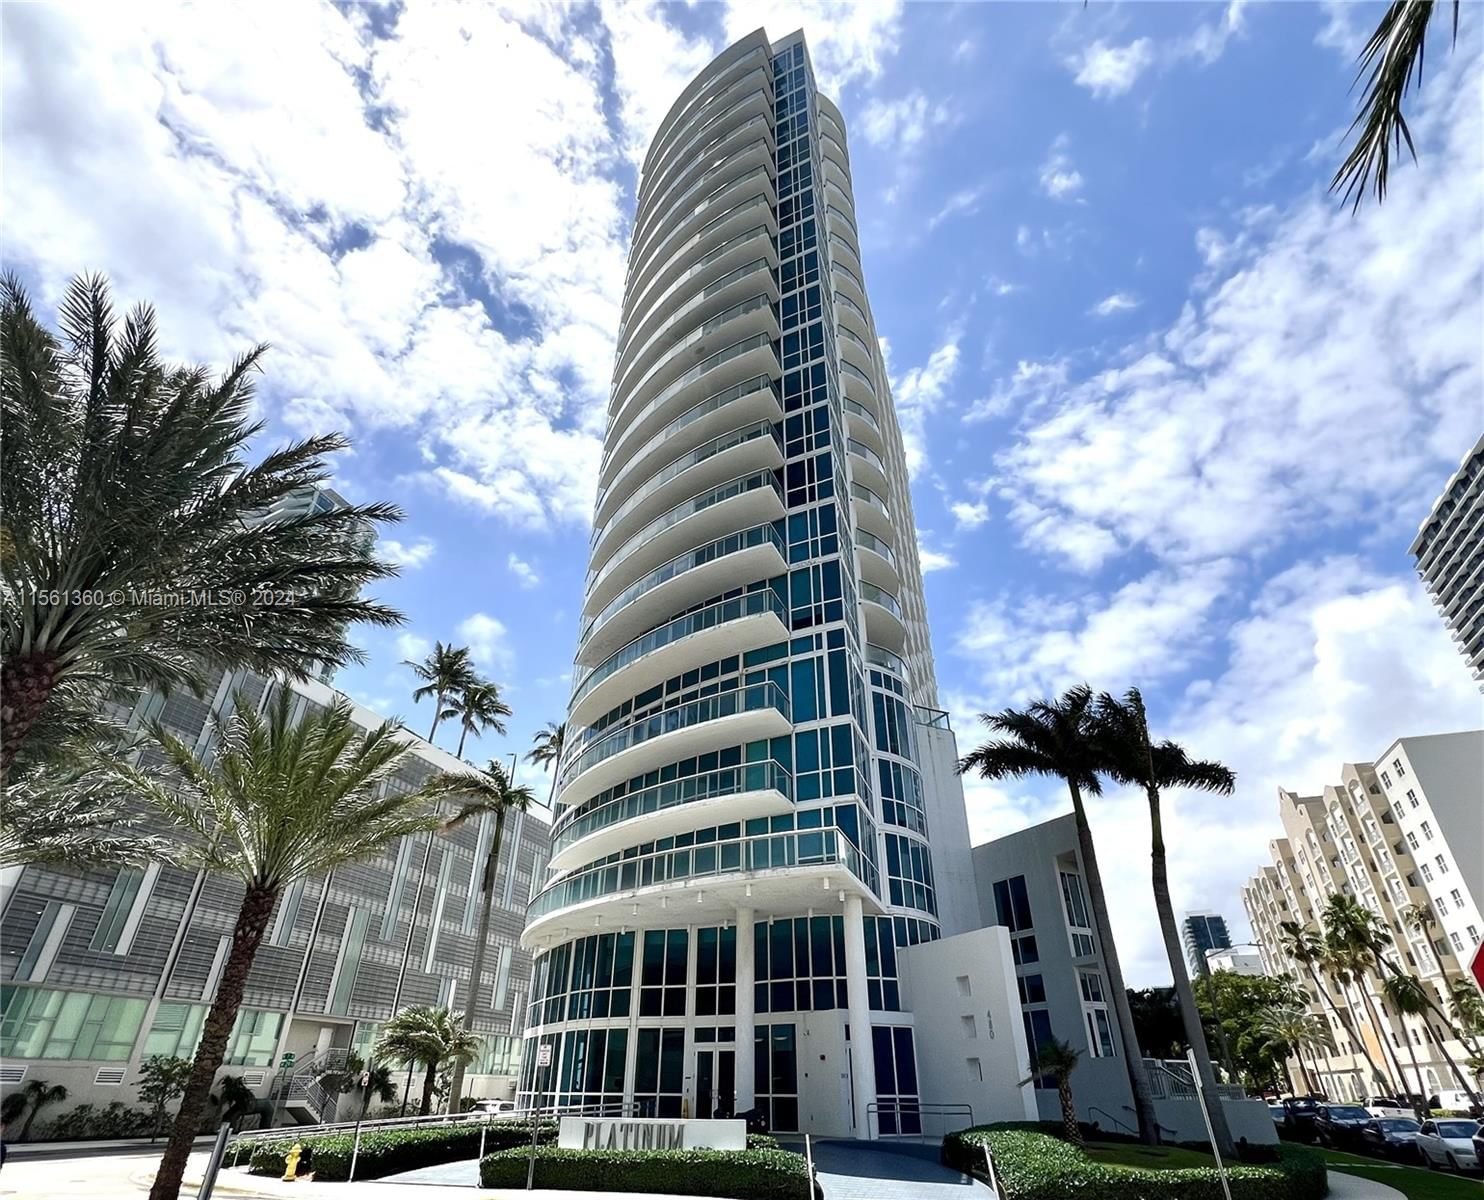 Real estate property located at 480 30th St #802, Miami-Dade County, PLATINUM CONDO, Miami, FL